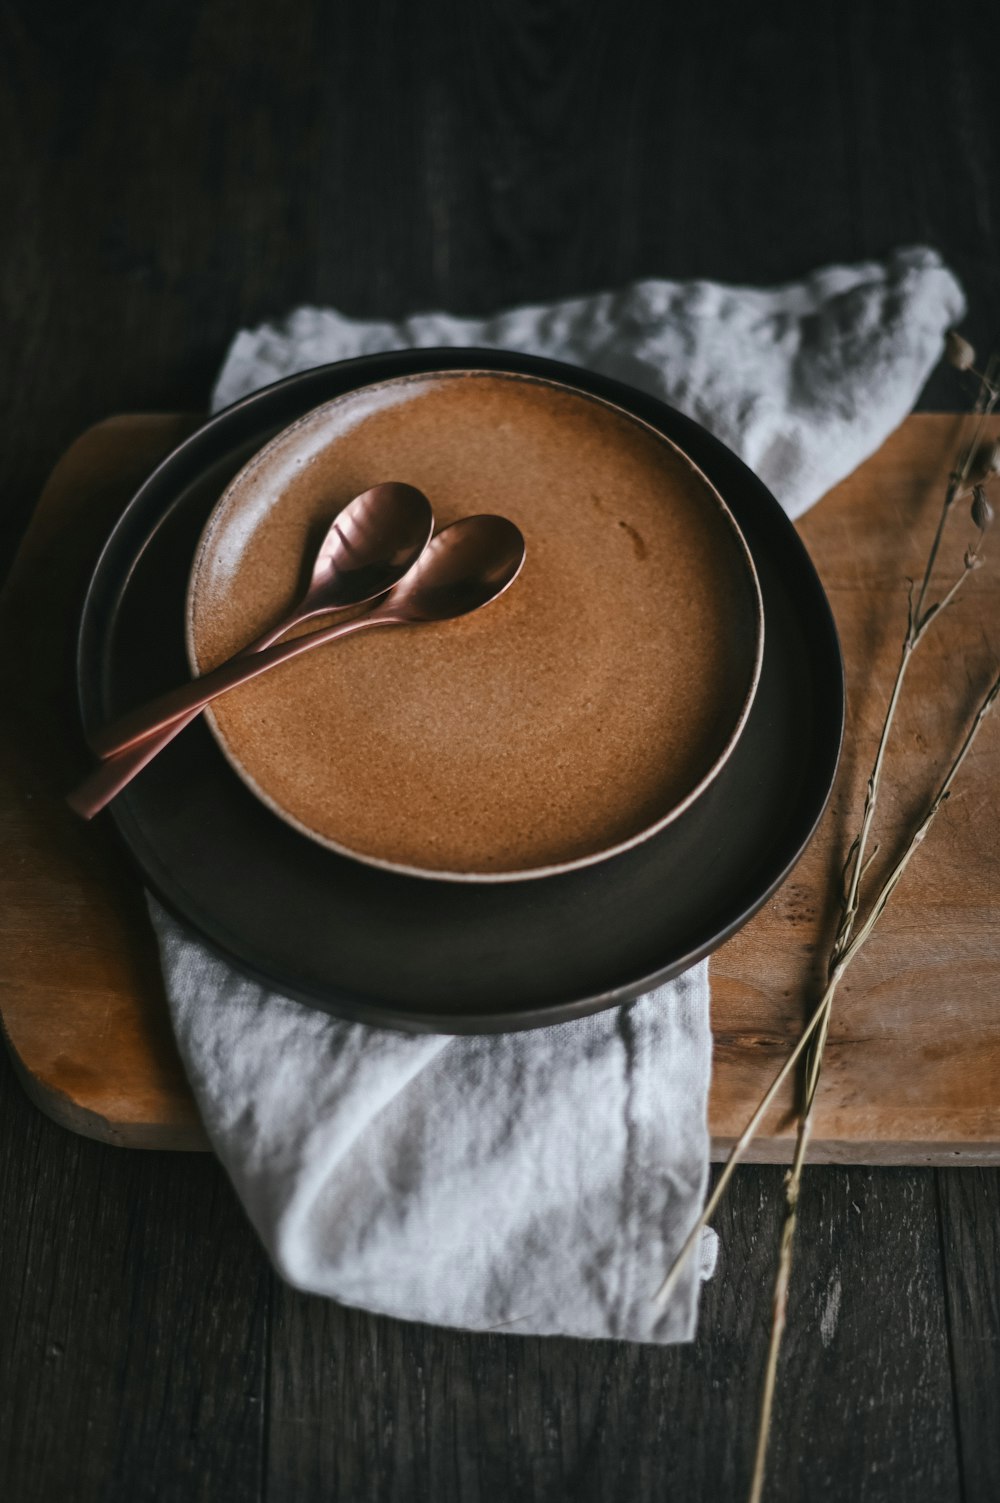 brown powder on black ceramic bowl